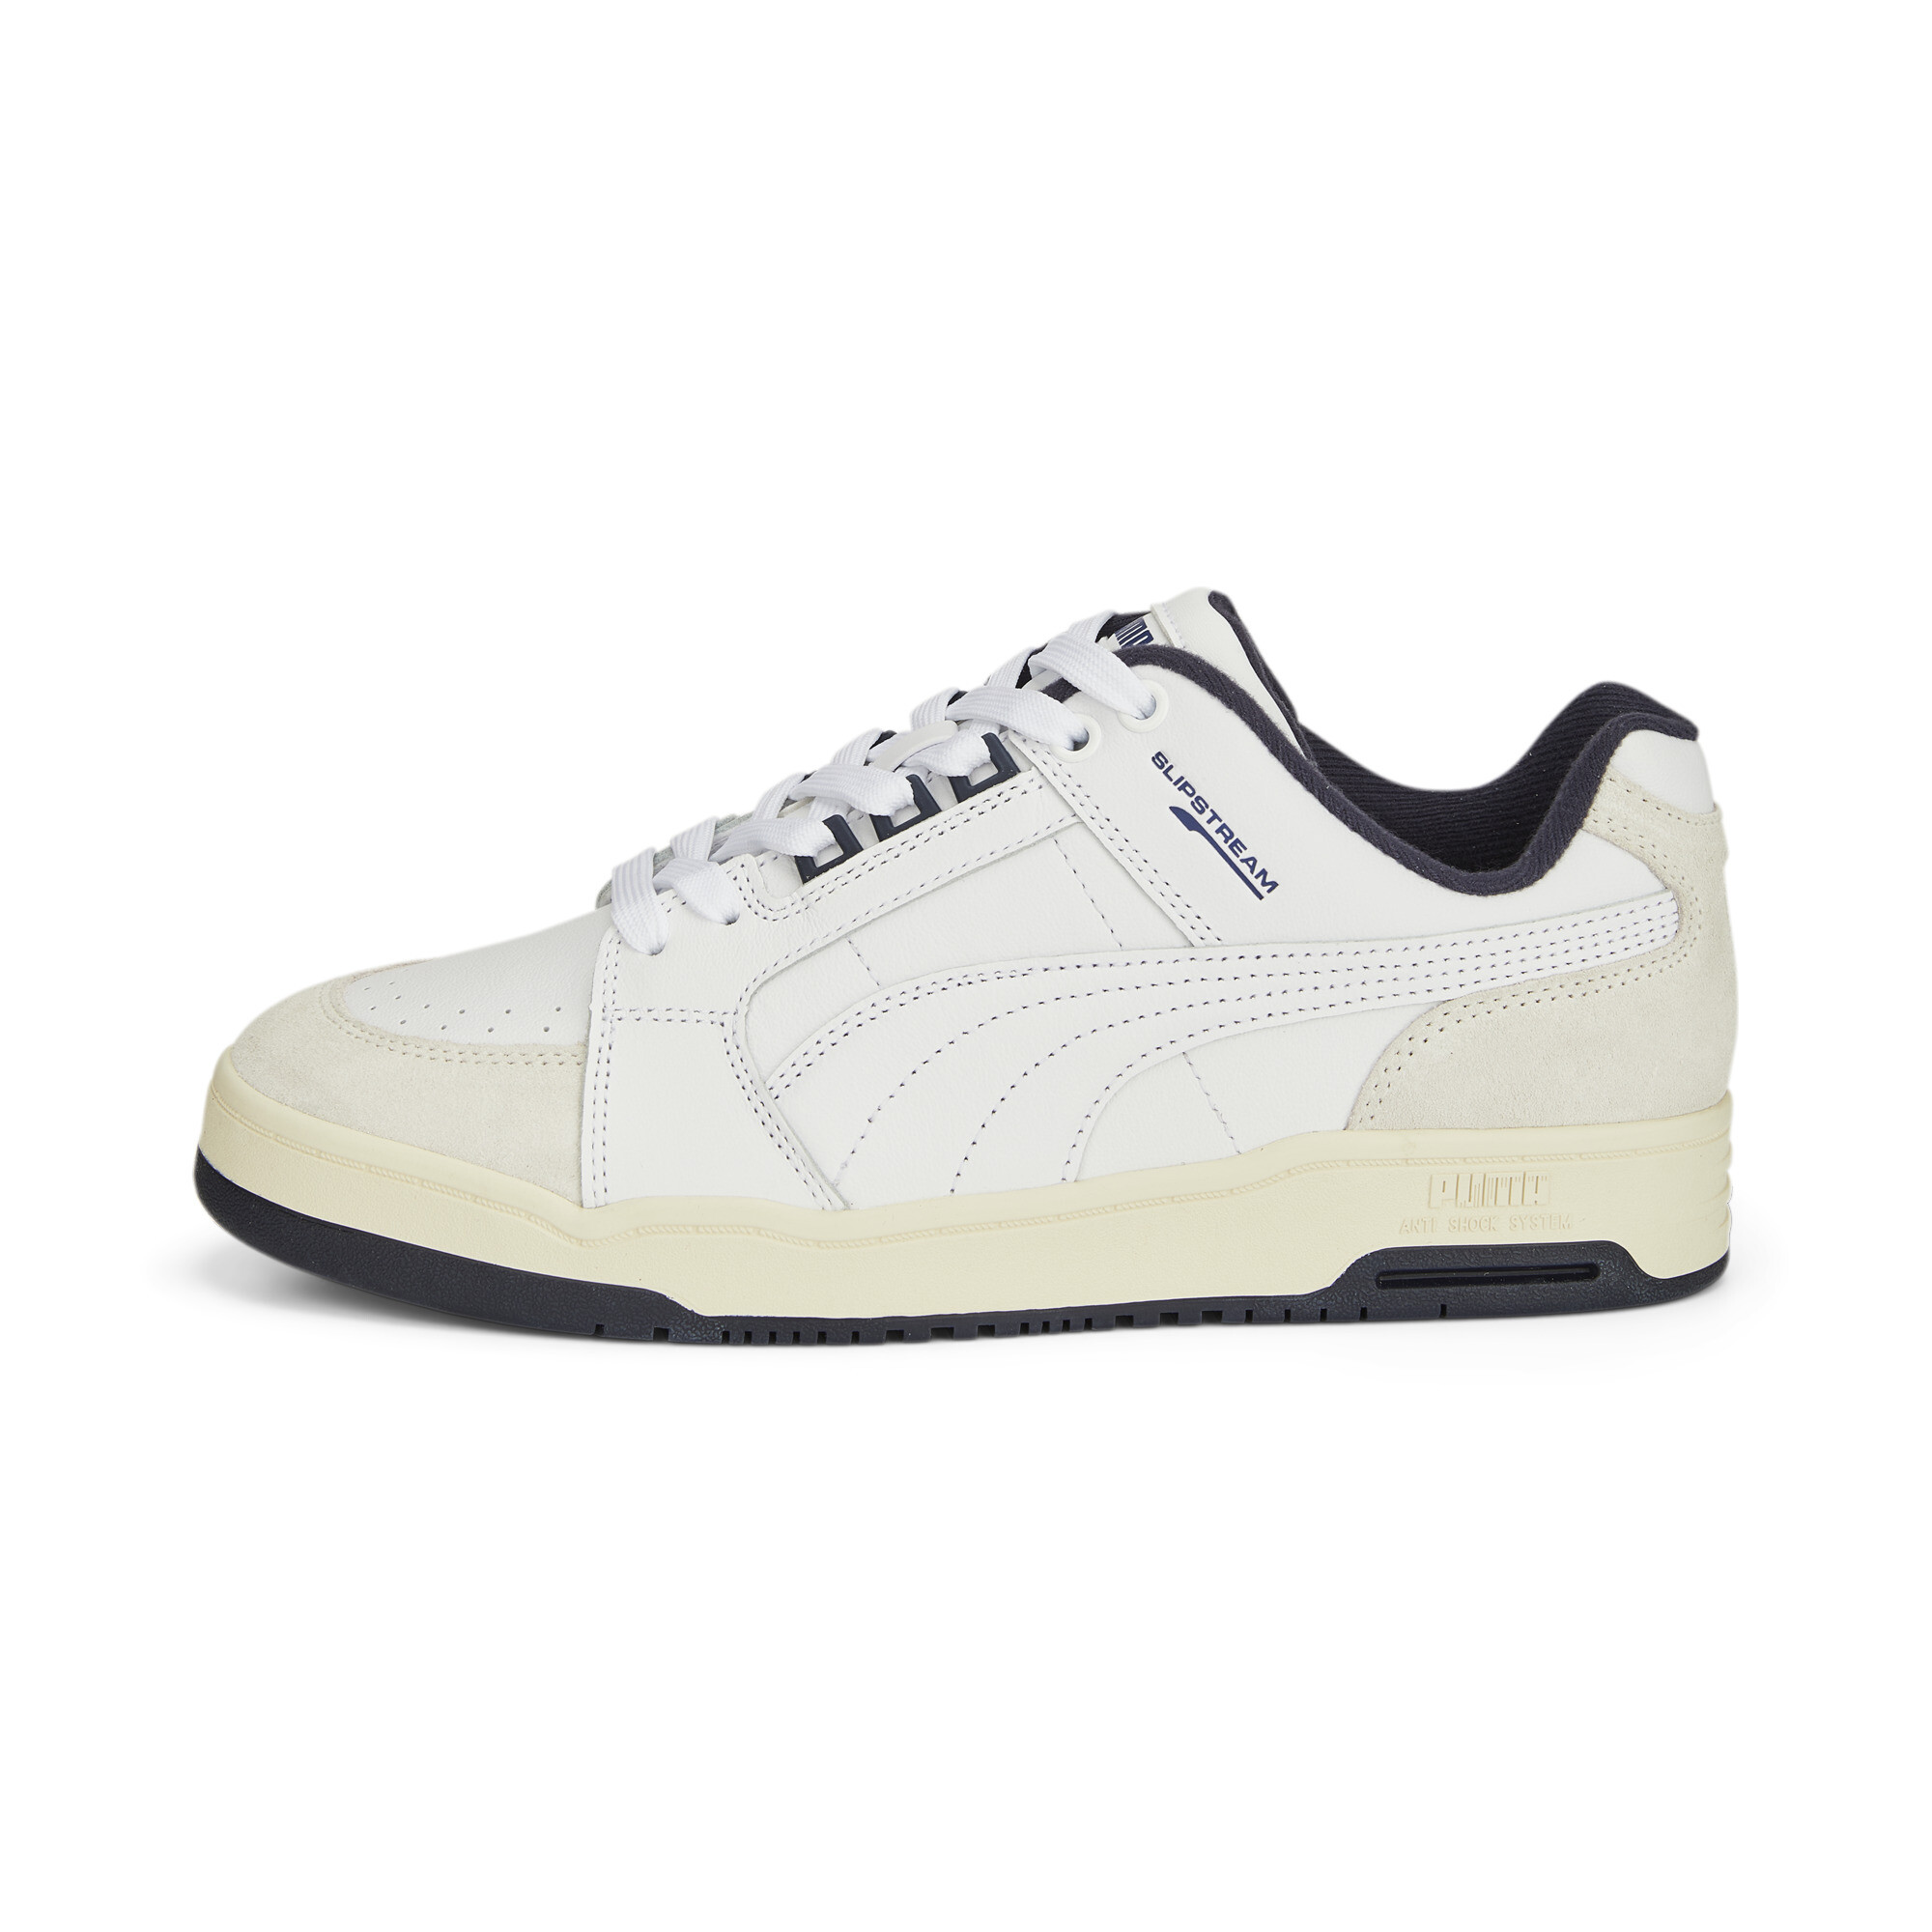 Puma Slipstream Lo Retro Trainers, White, Size 35.5, Shoes